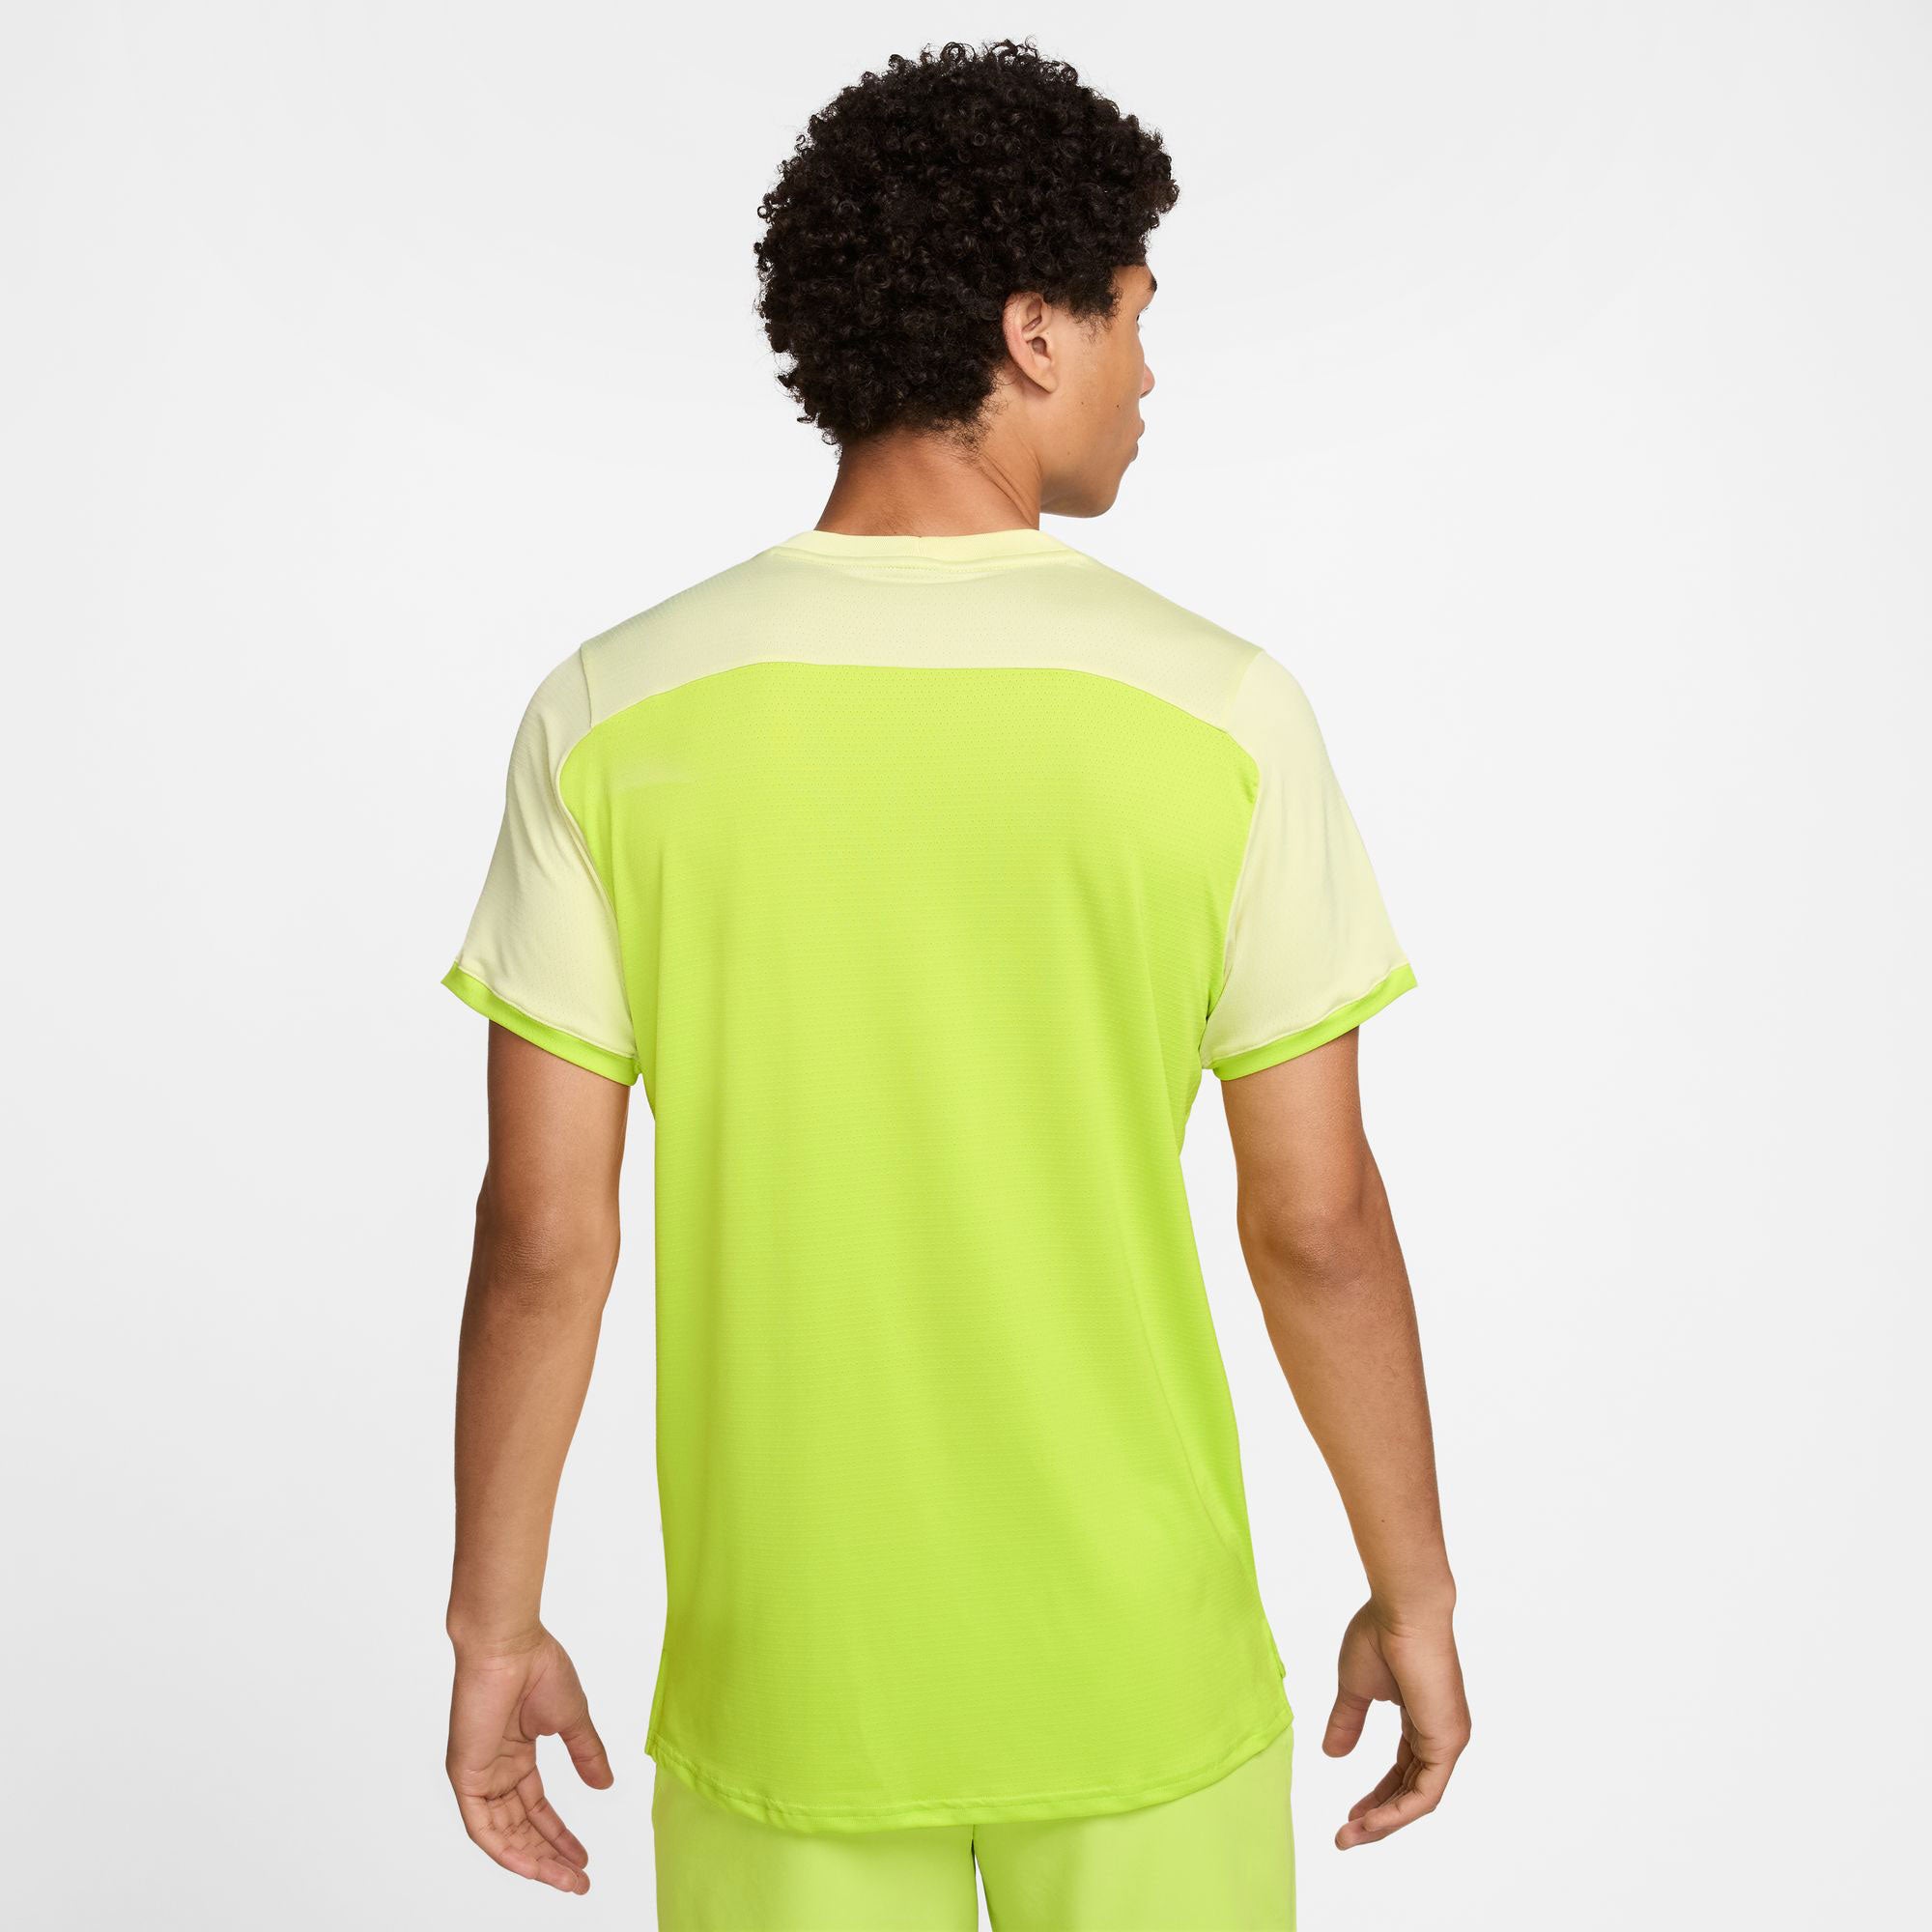 NikeCourt Advantage Men's Dri-FIT Tennis Shirt - Yellow (2)